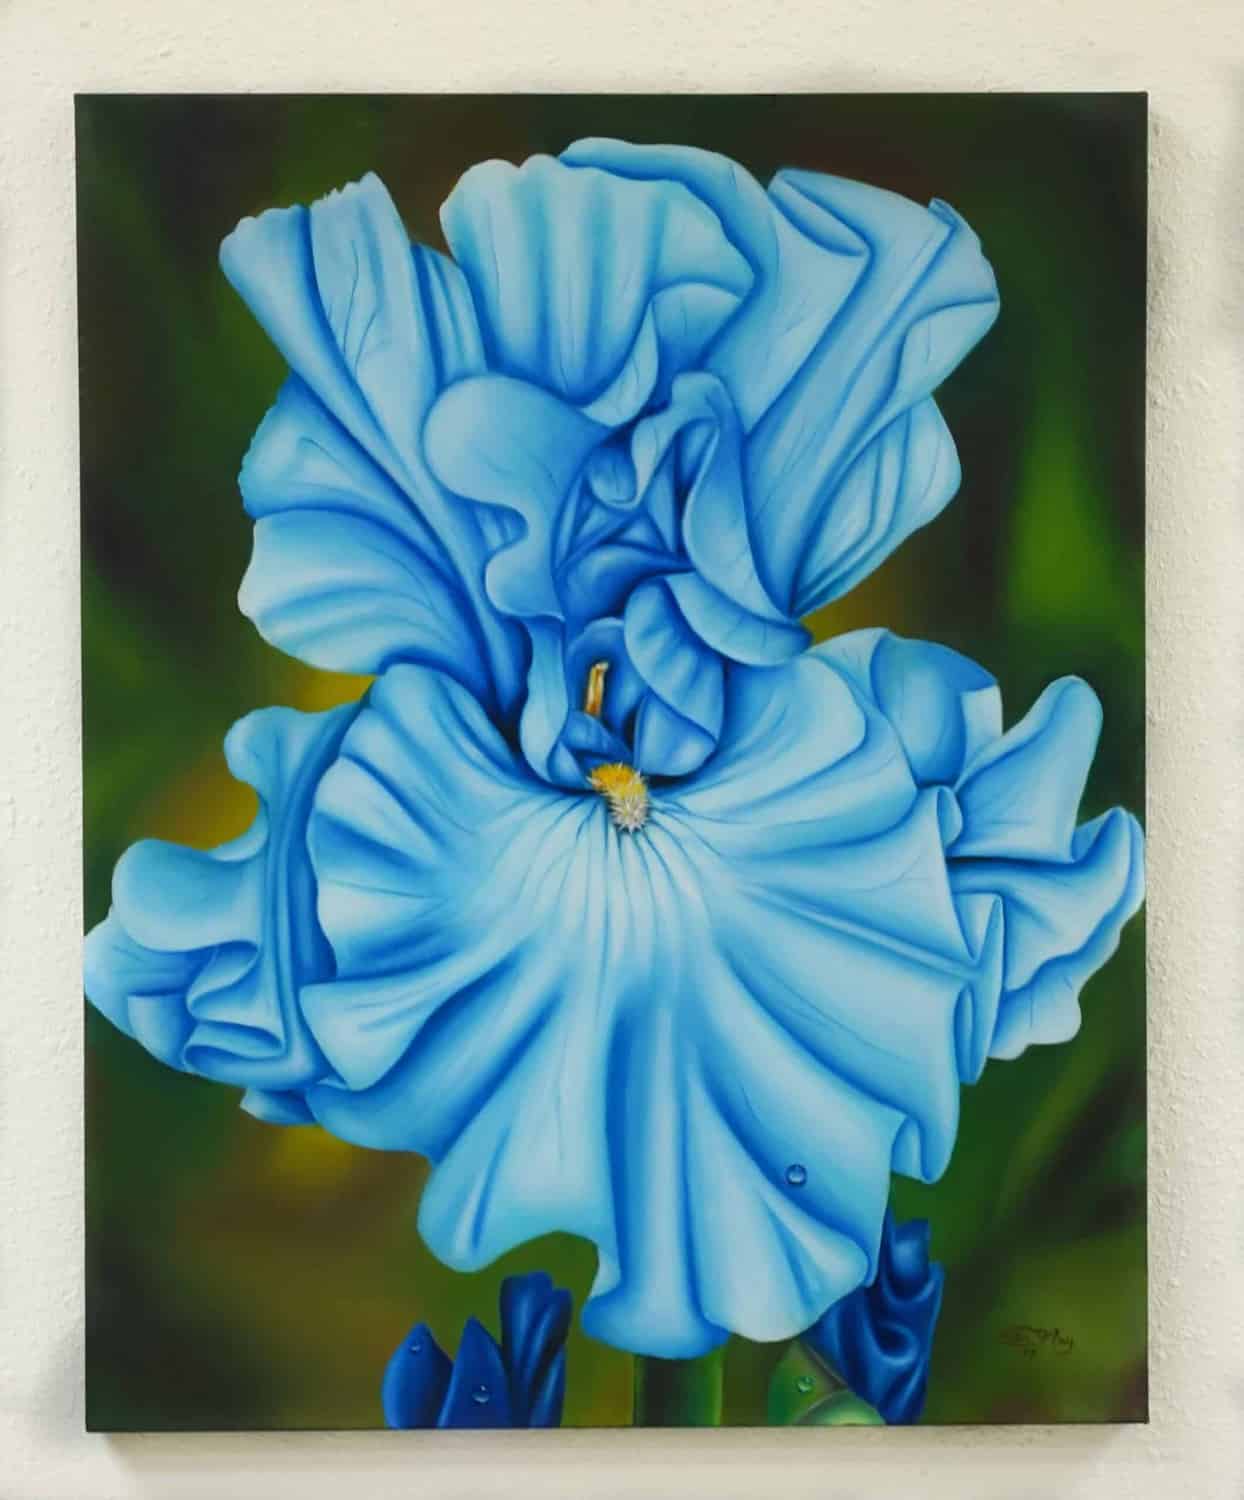 The Blue Iris